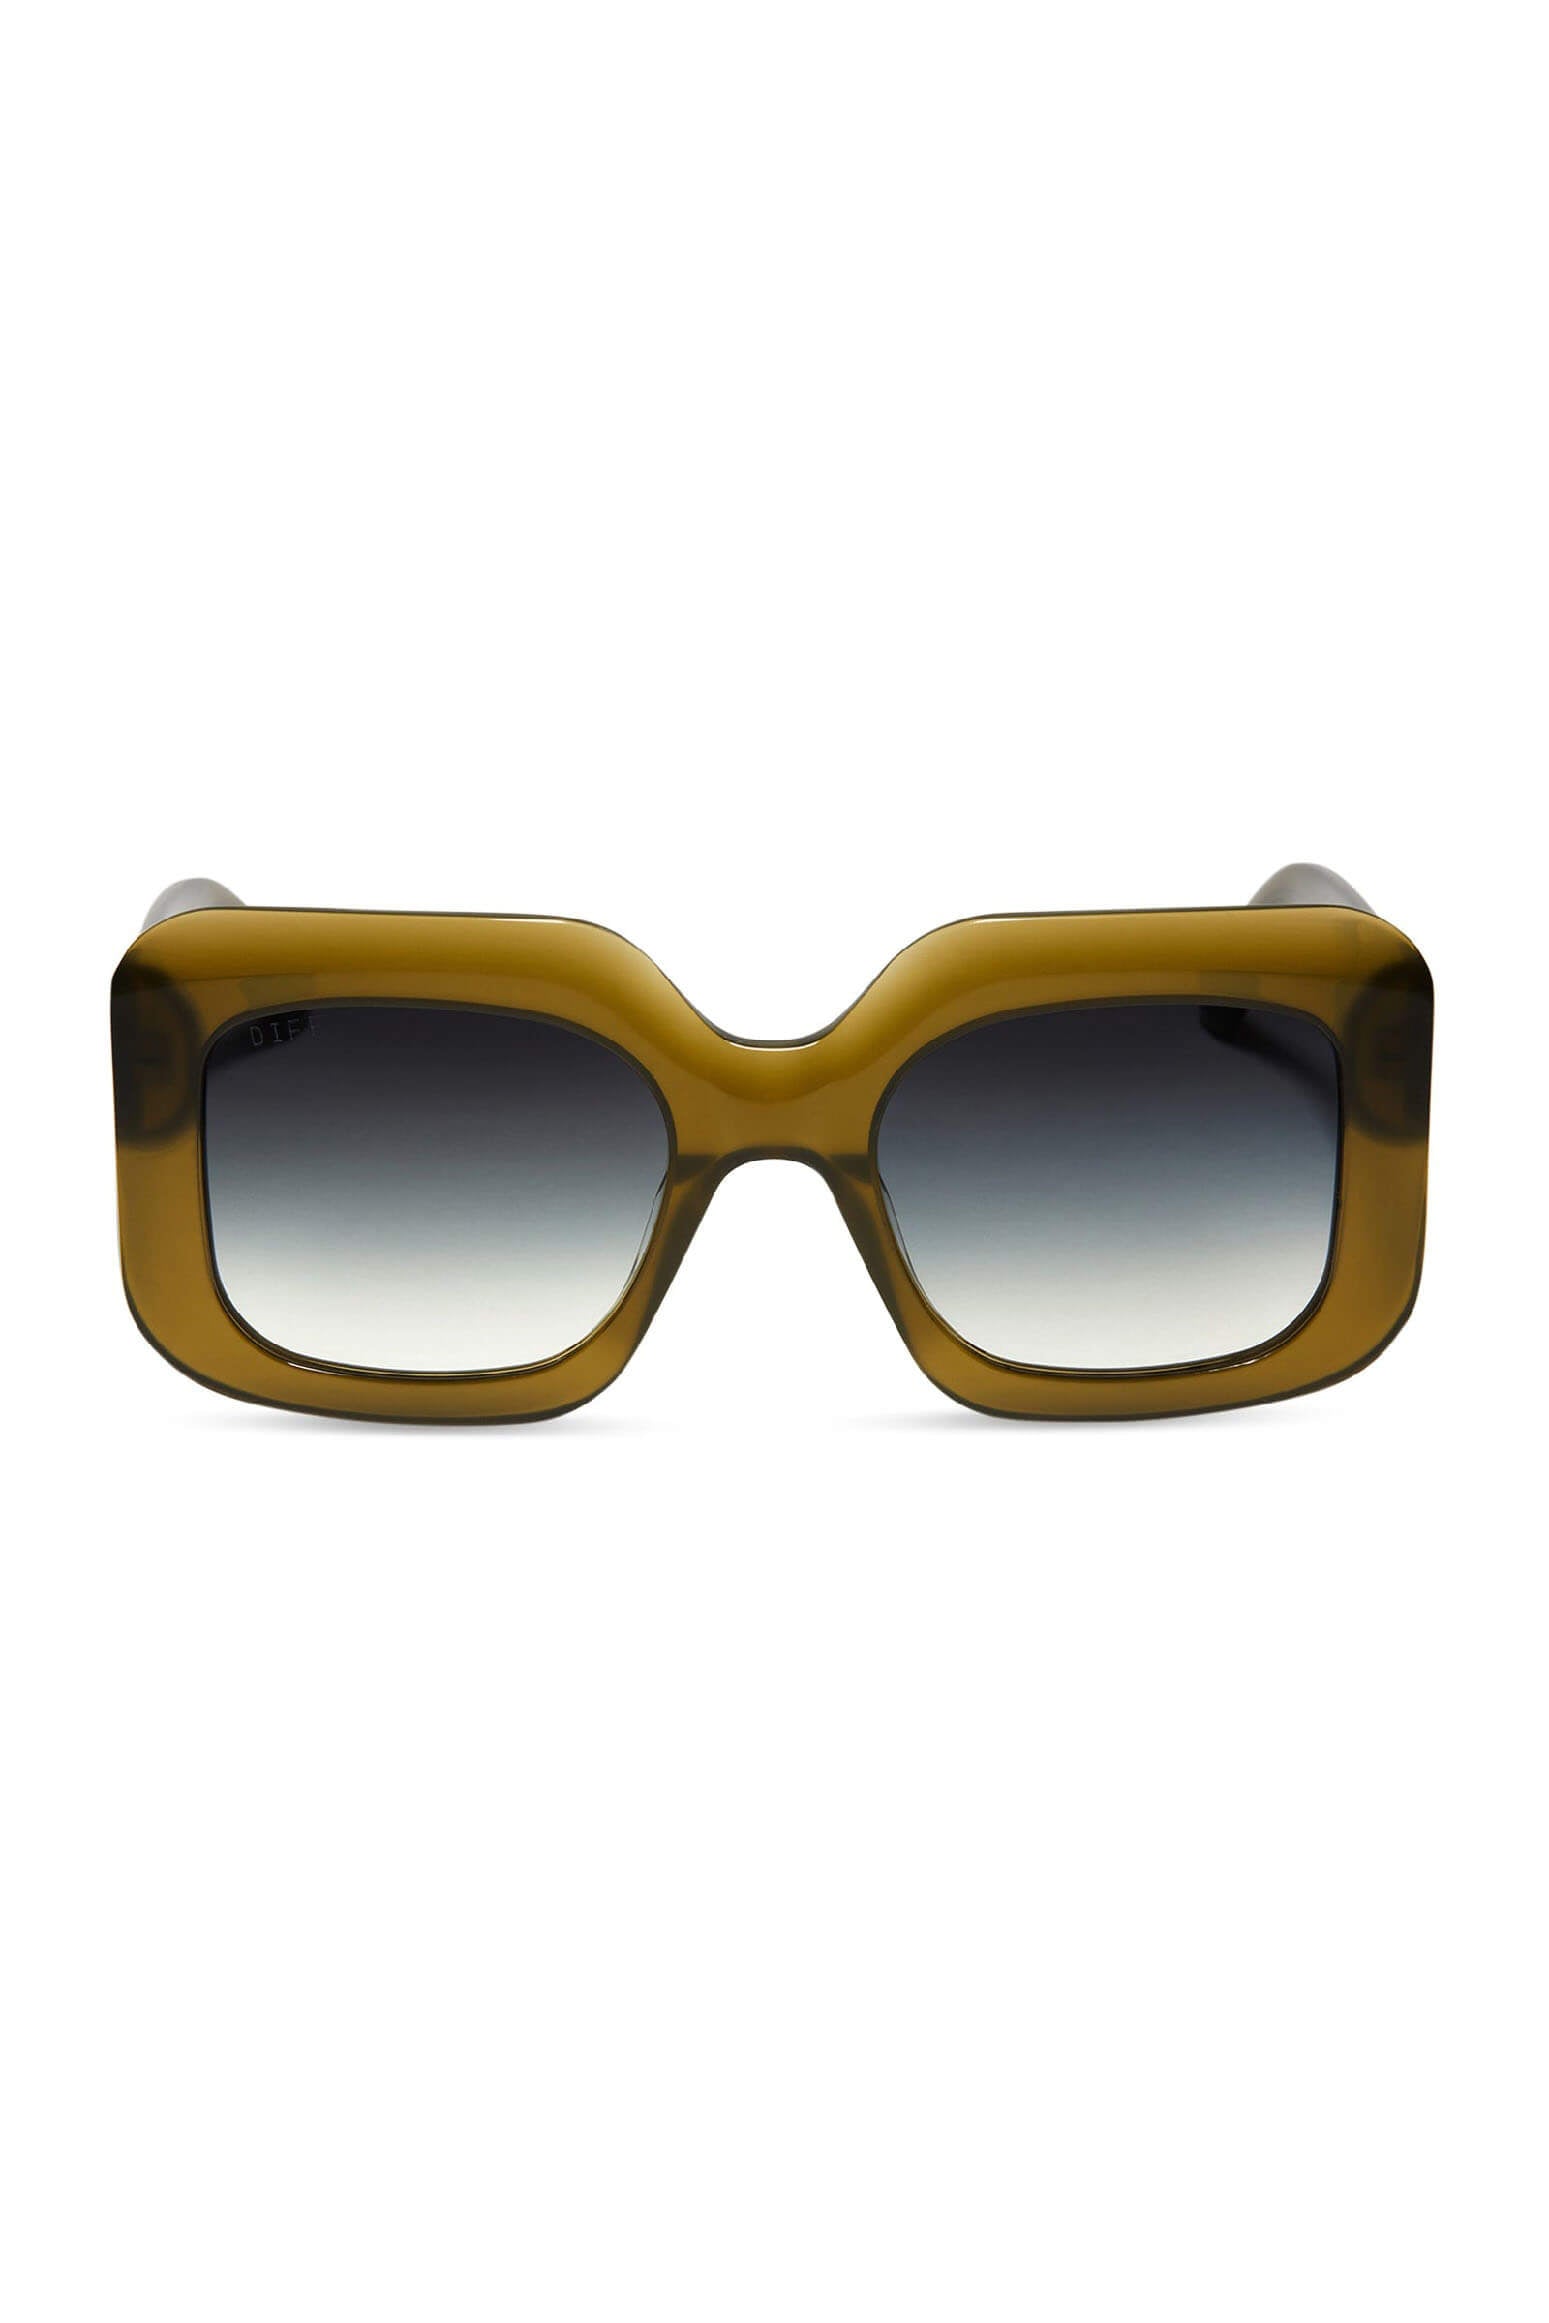 giada sunglasses by diff eyewear